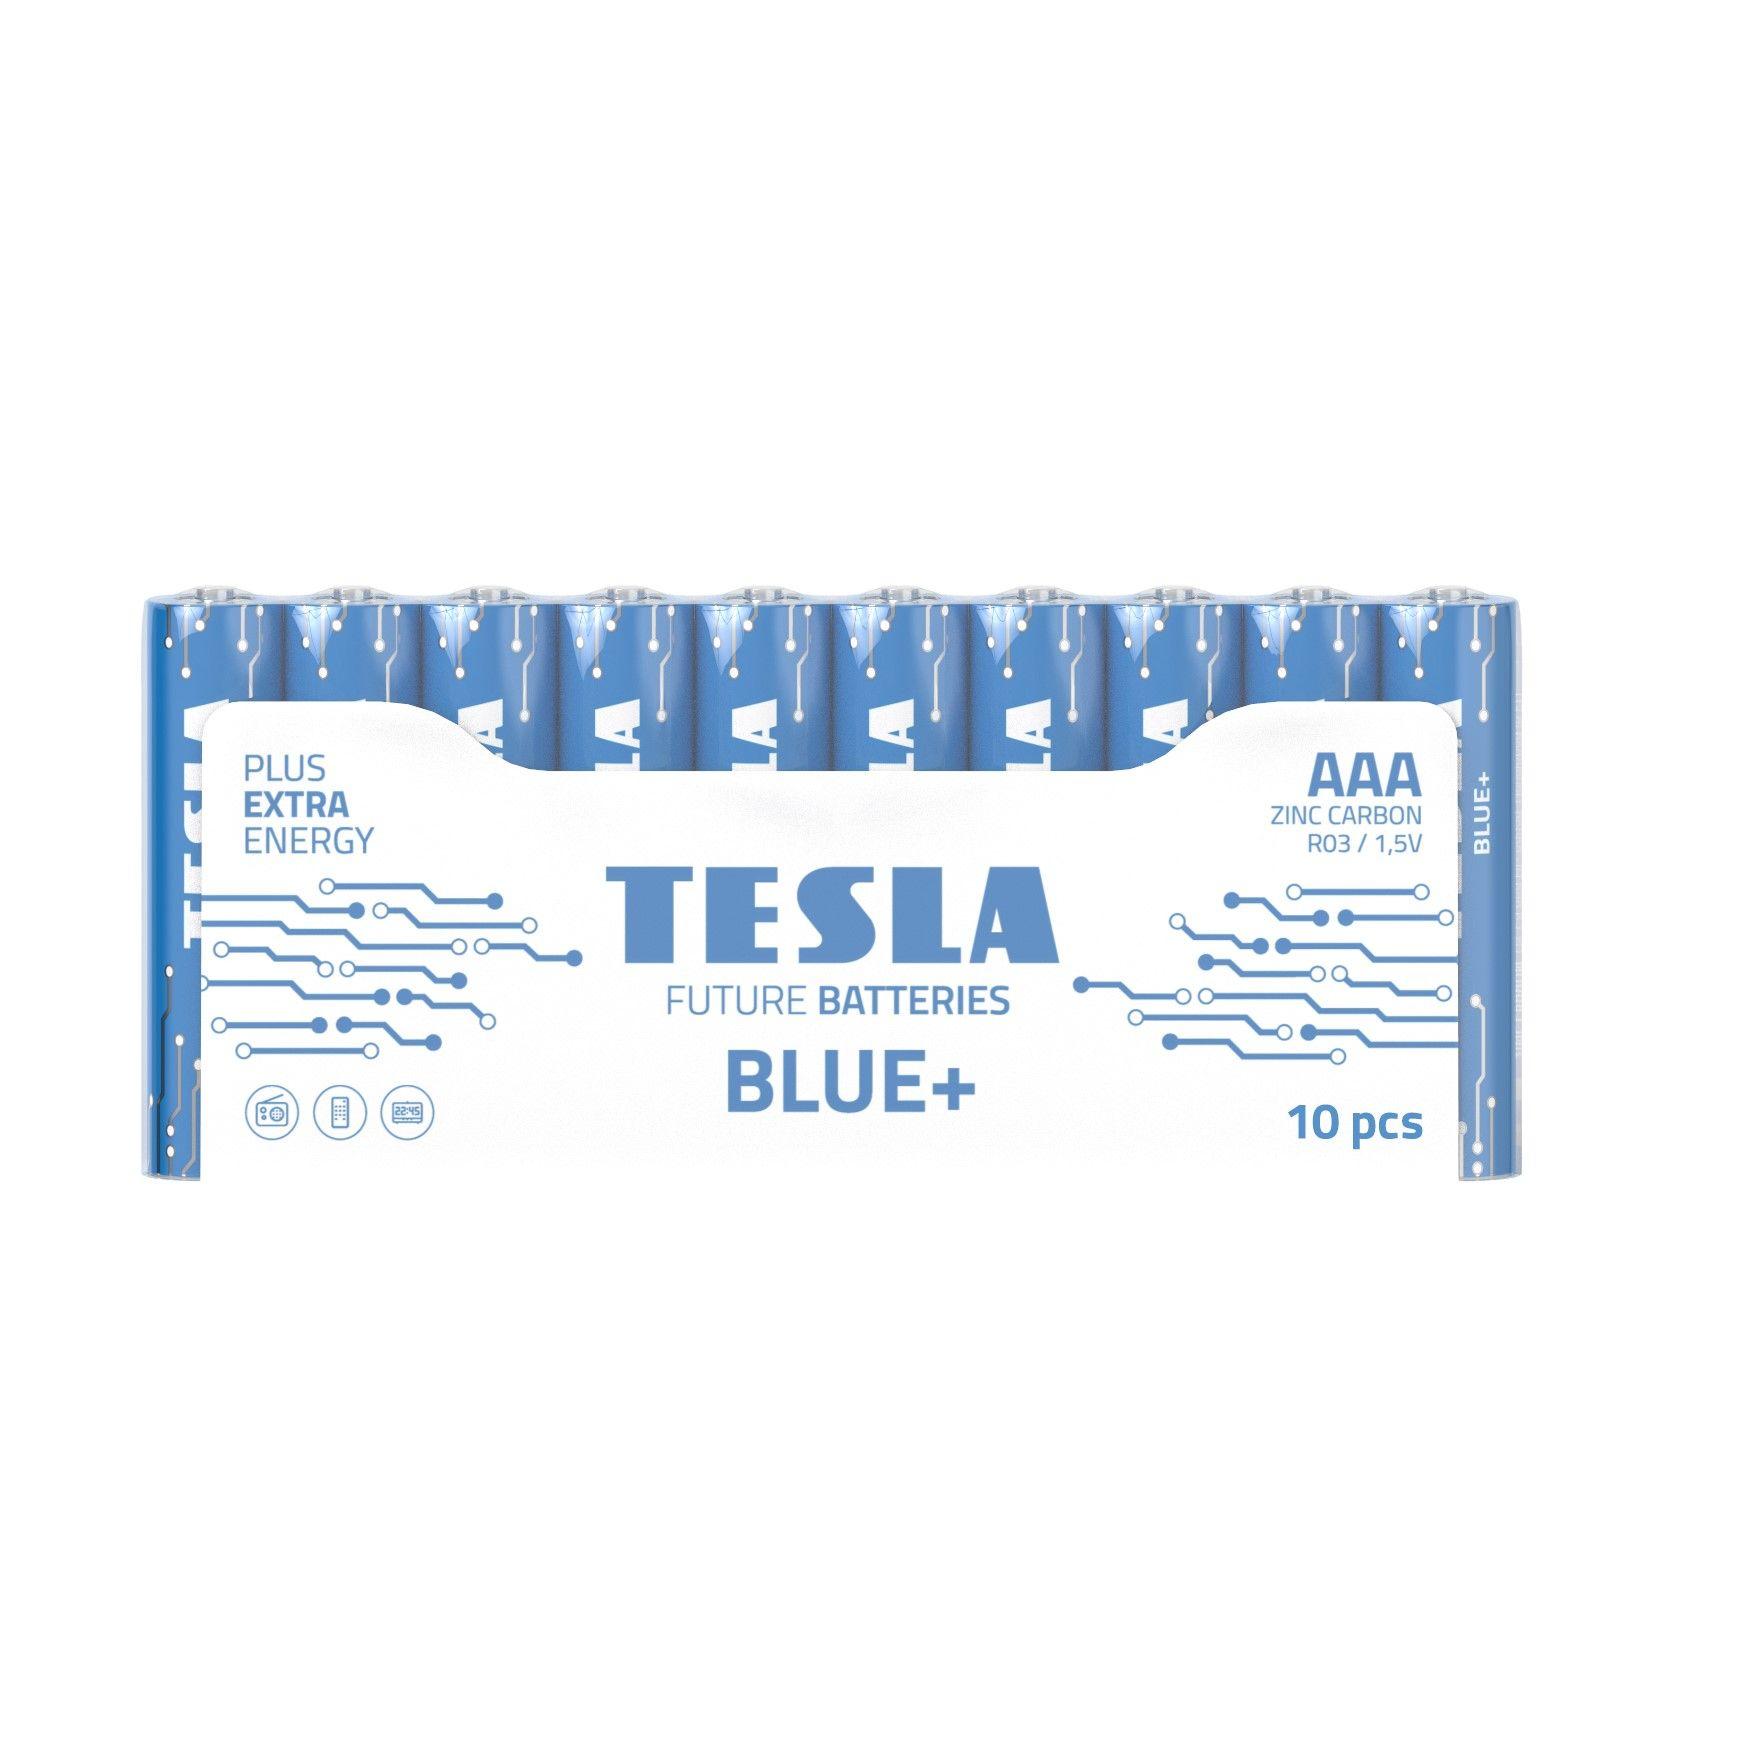 Zinc-carbon batteries TESLA AAA/R03/1,5V 10pcs BLUE+